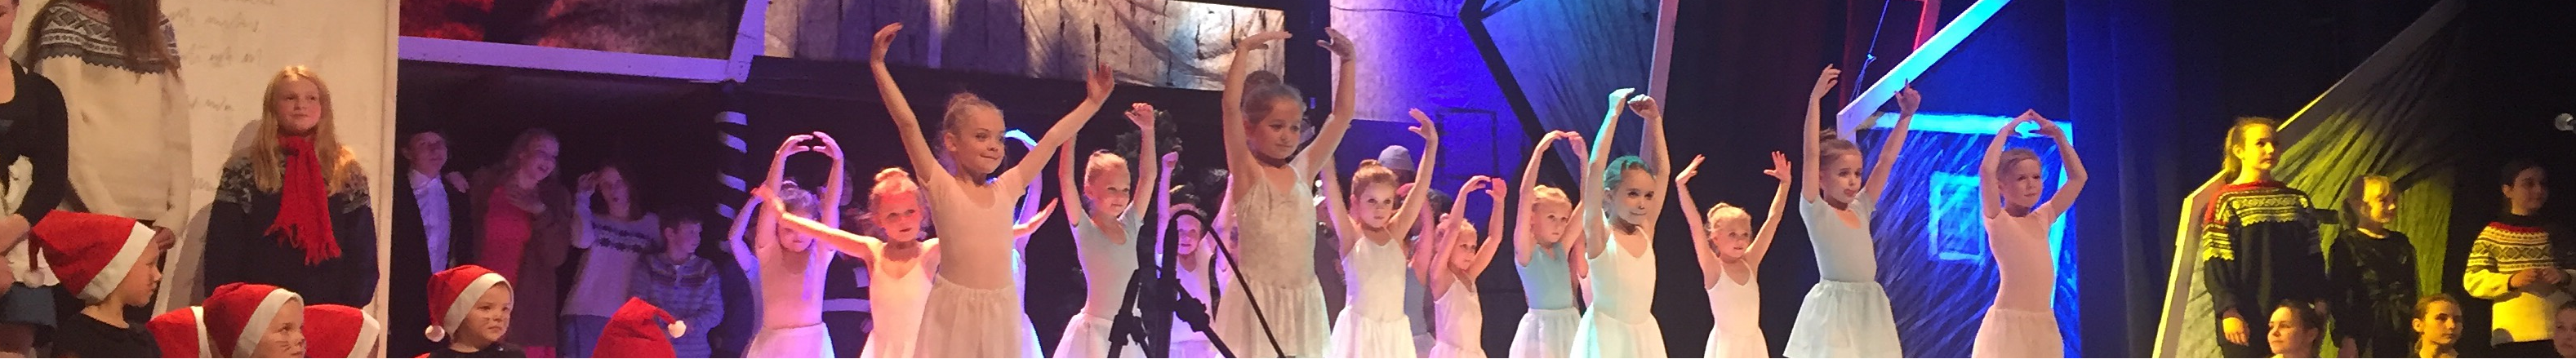 Dansende barn på scenen - Klikk for stort bilde